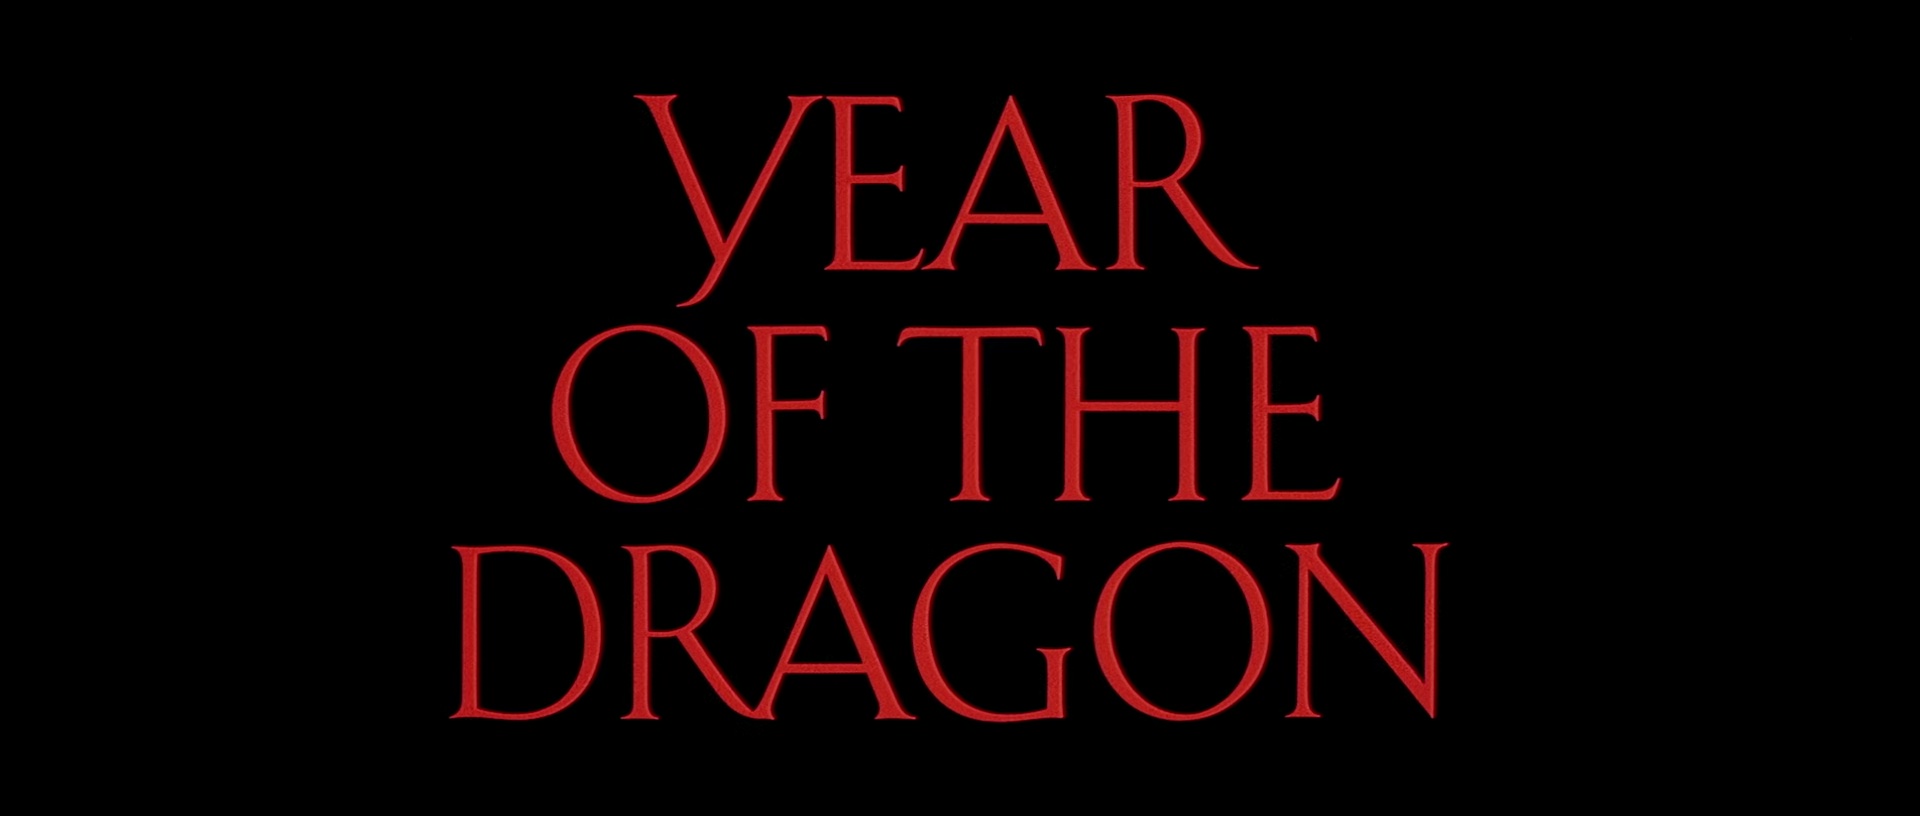 L’ANNÉE DU DRAGON (Year of the Dragon) de Michael Cimino (1985)